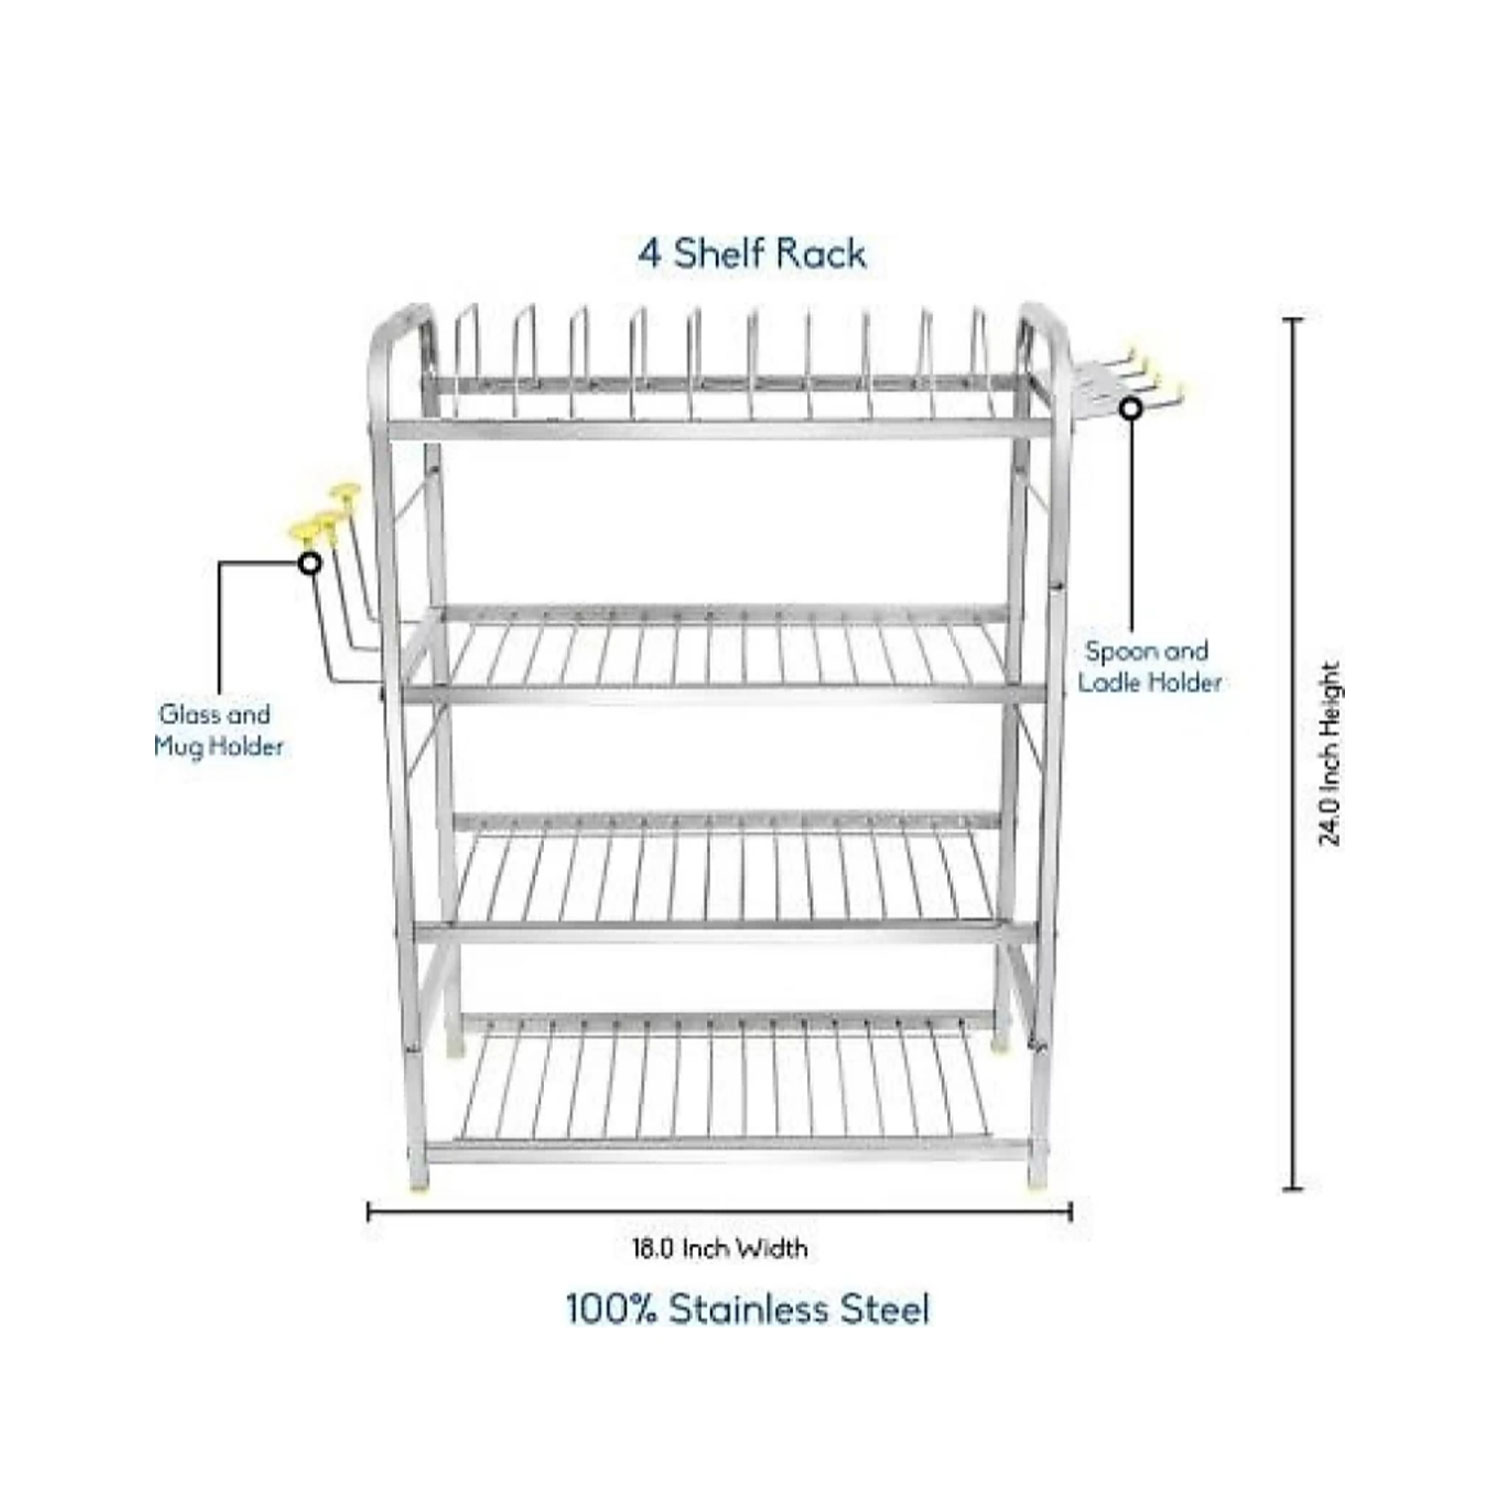 BRIGHT STEEL 4 Shelf Wall Mount Kitchen Racks |  Stainless Steel |  Modular Kitchen Bartan Stand 24*18 inch